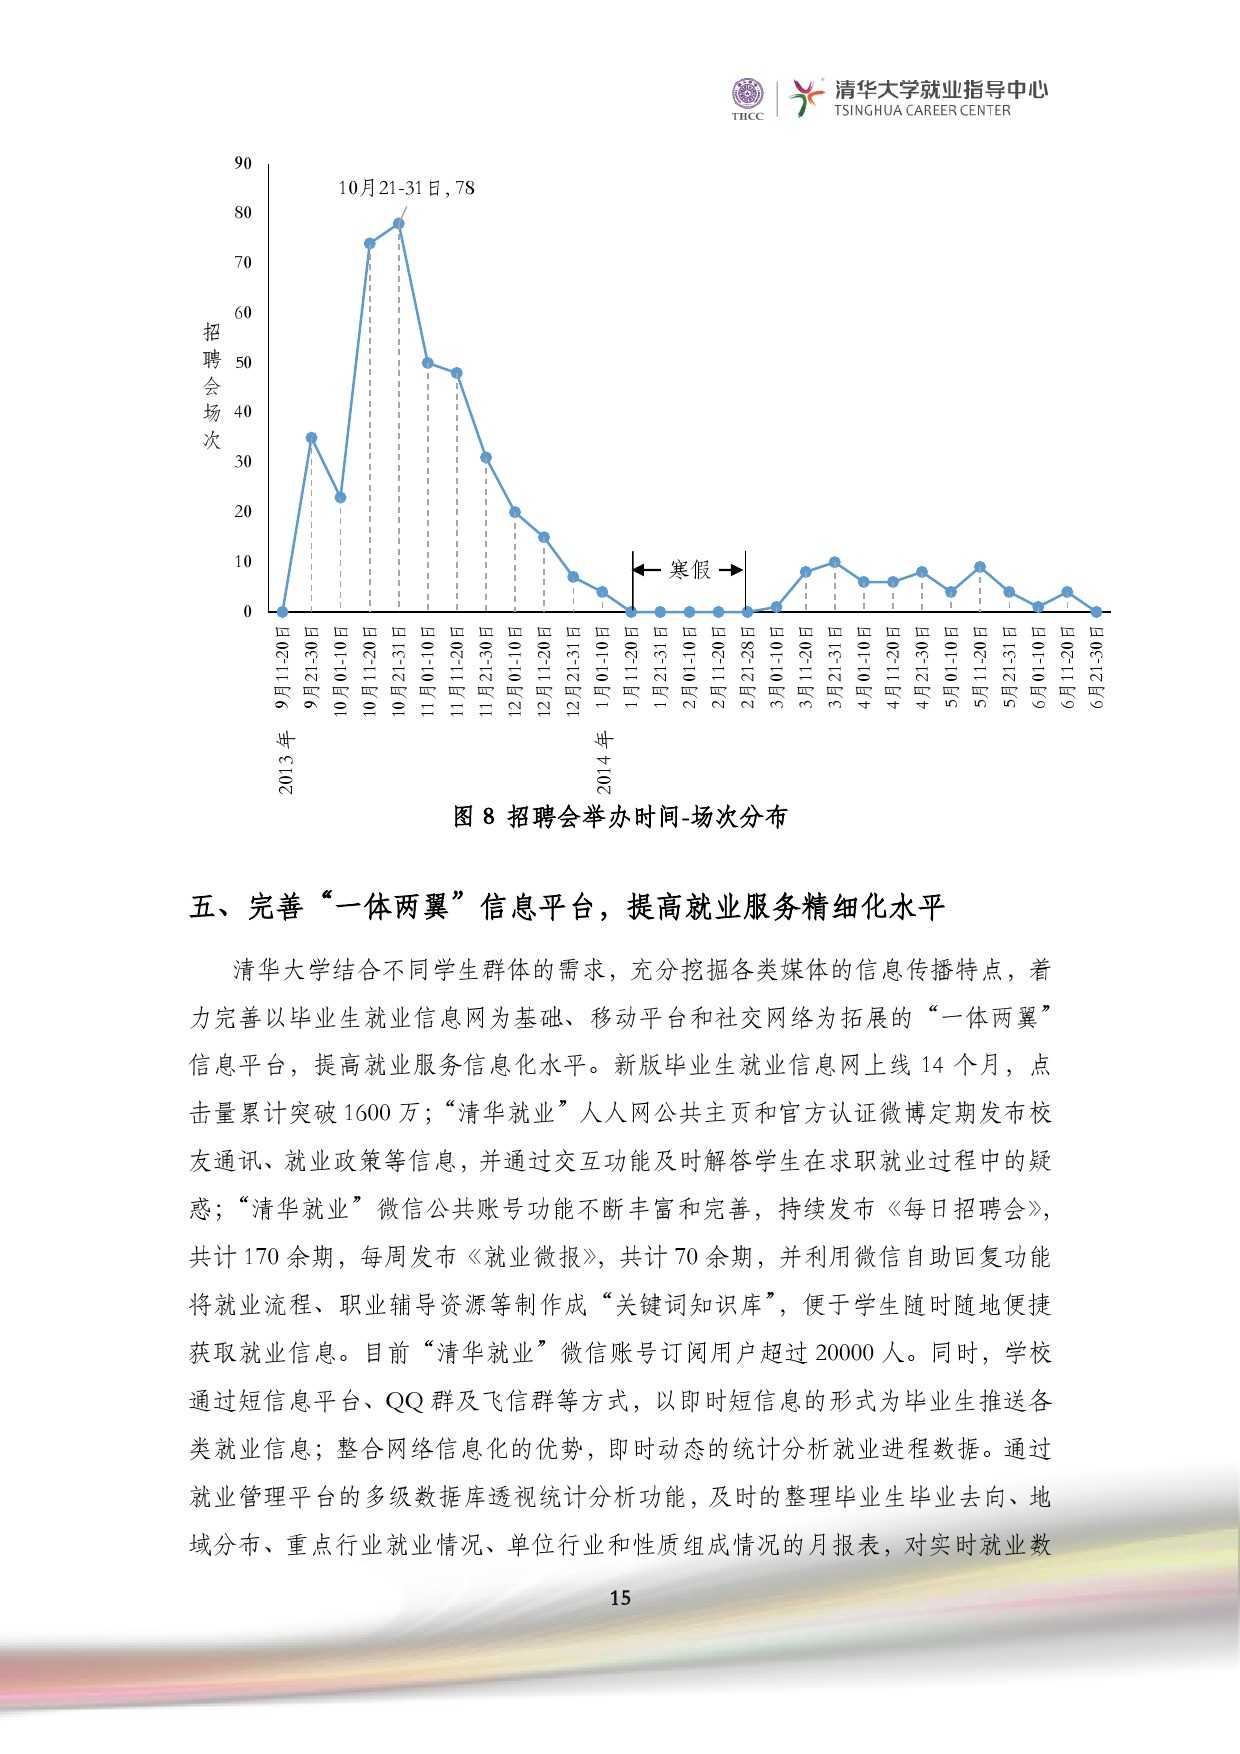 清華大學2014 年畢業生就業質量報告_000017